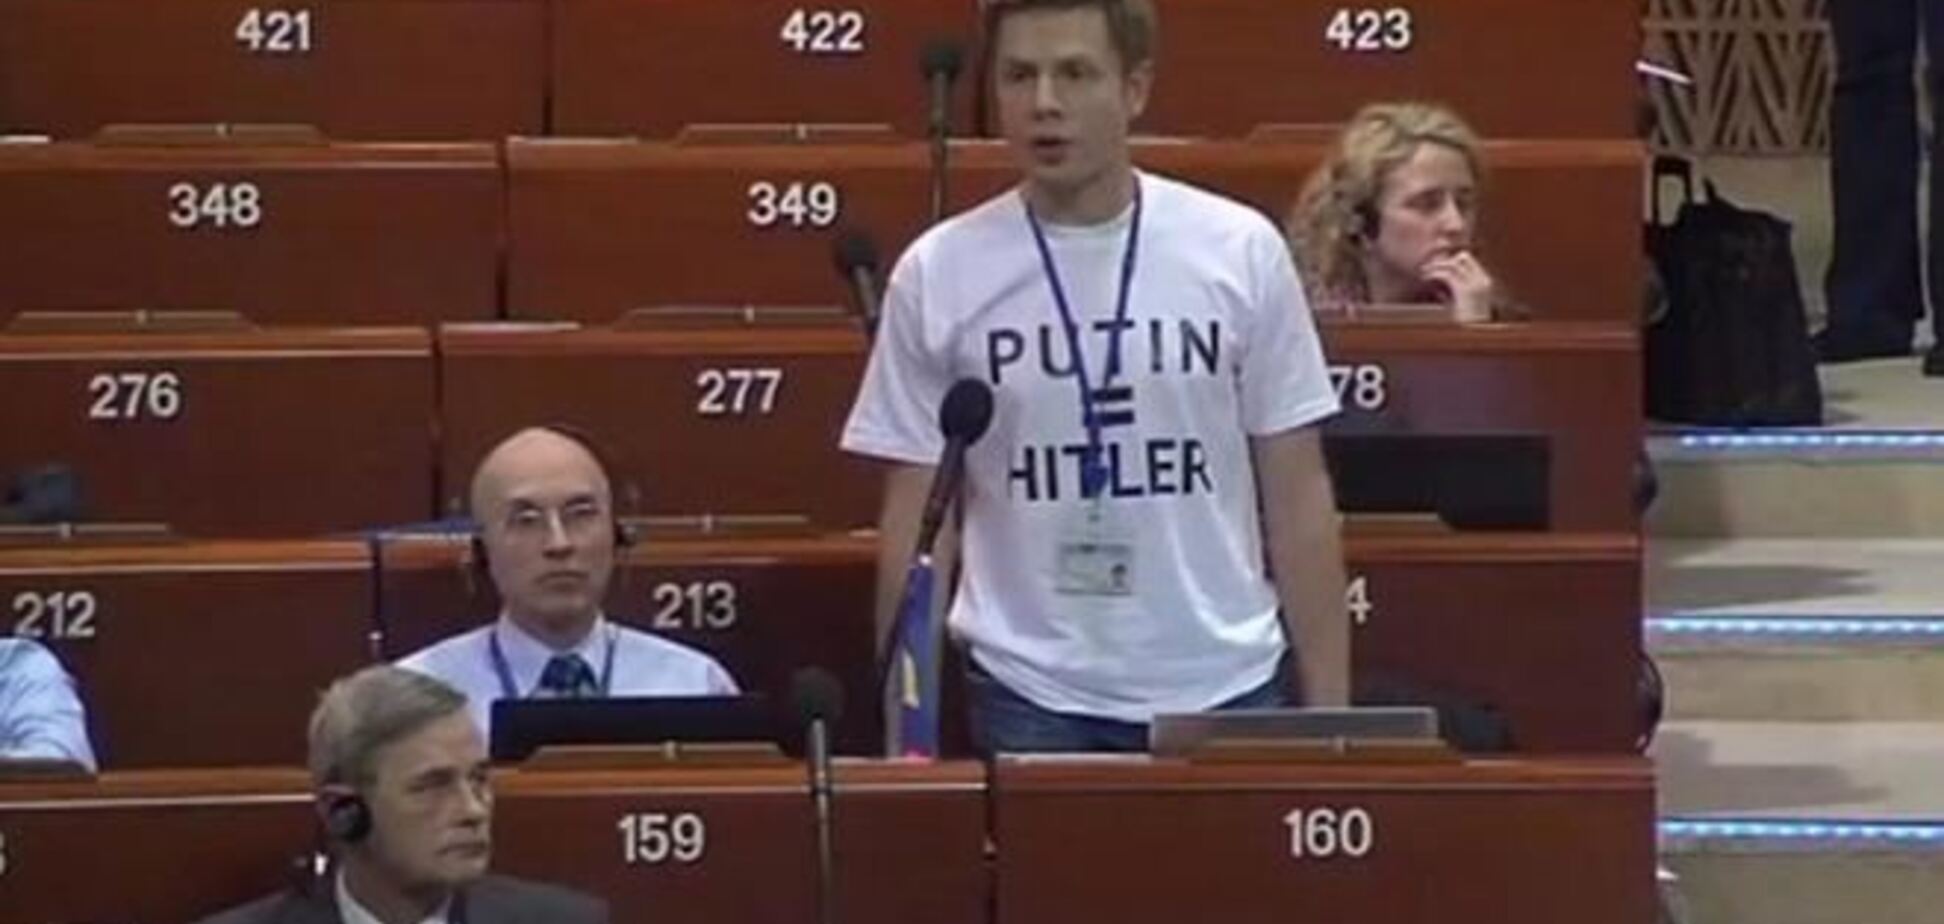 В Совете Европы вспыхнул скандал из-за футболки украинского делегата 'PUTIN = HITLER'